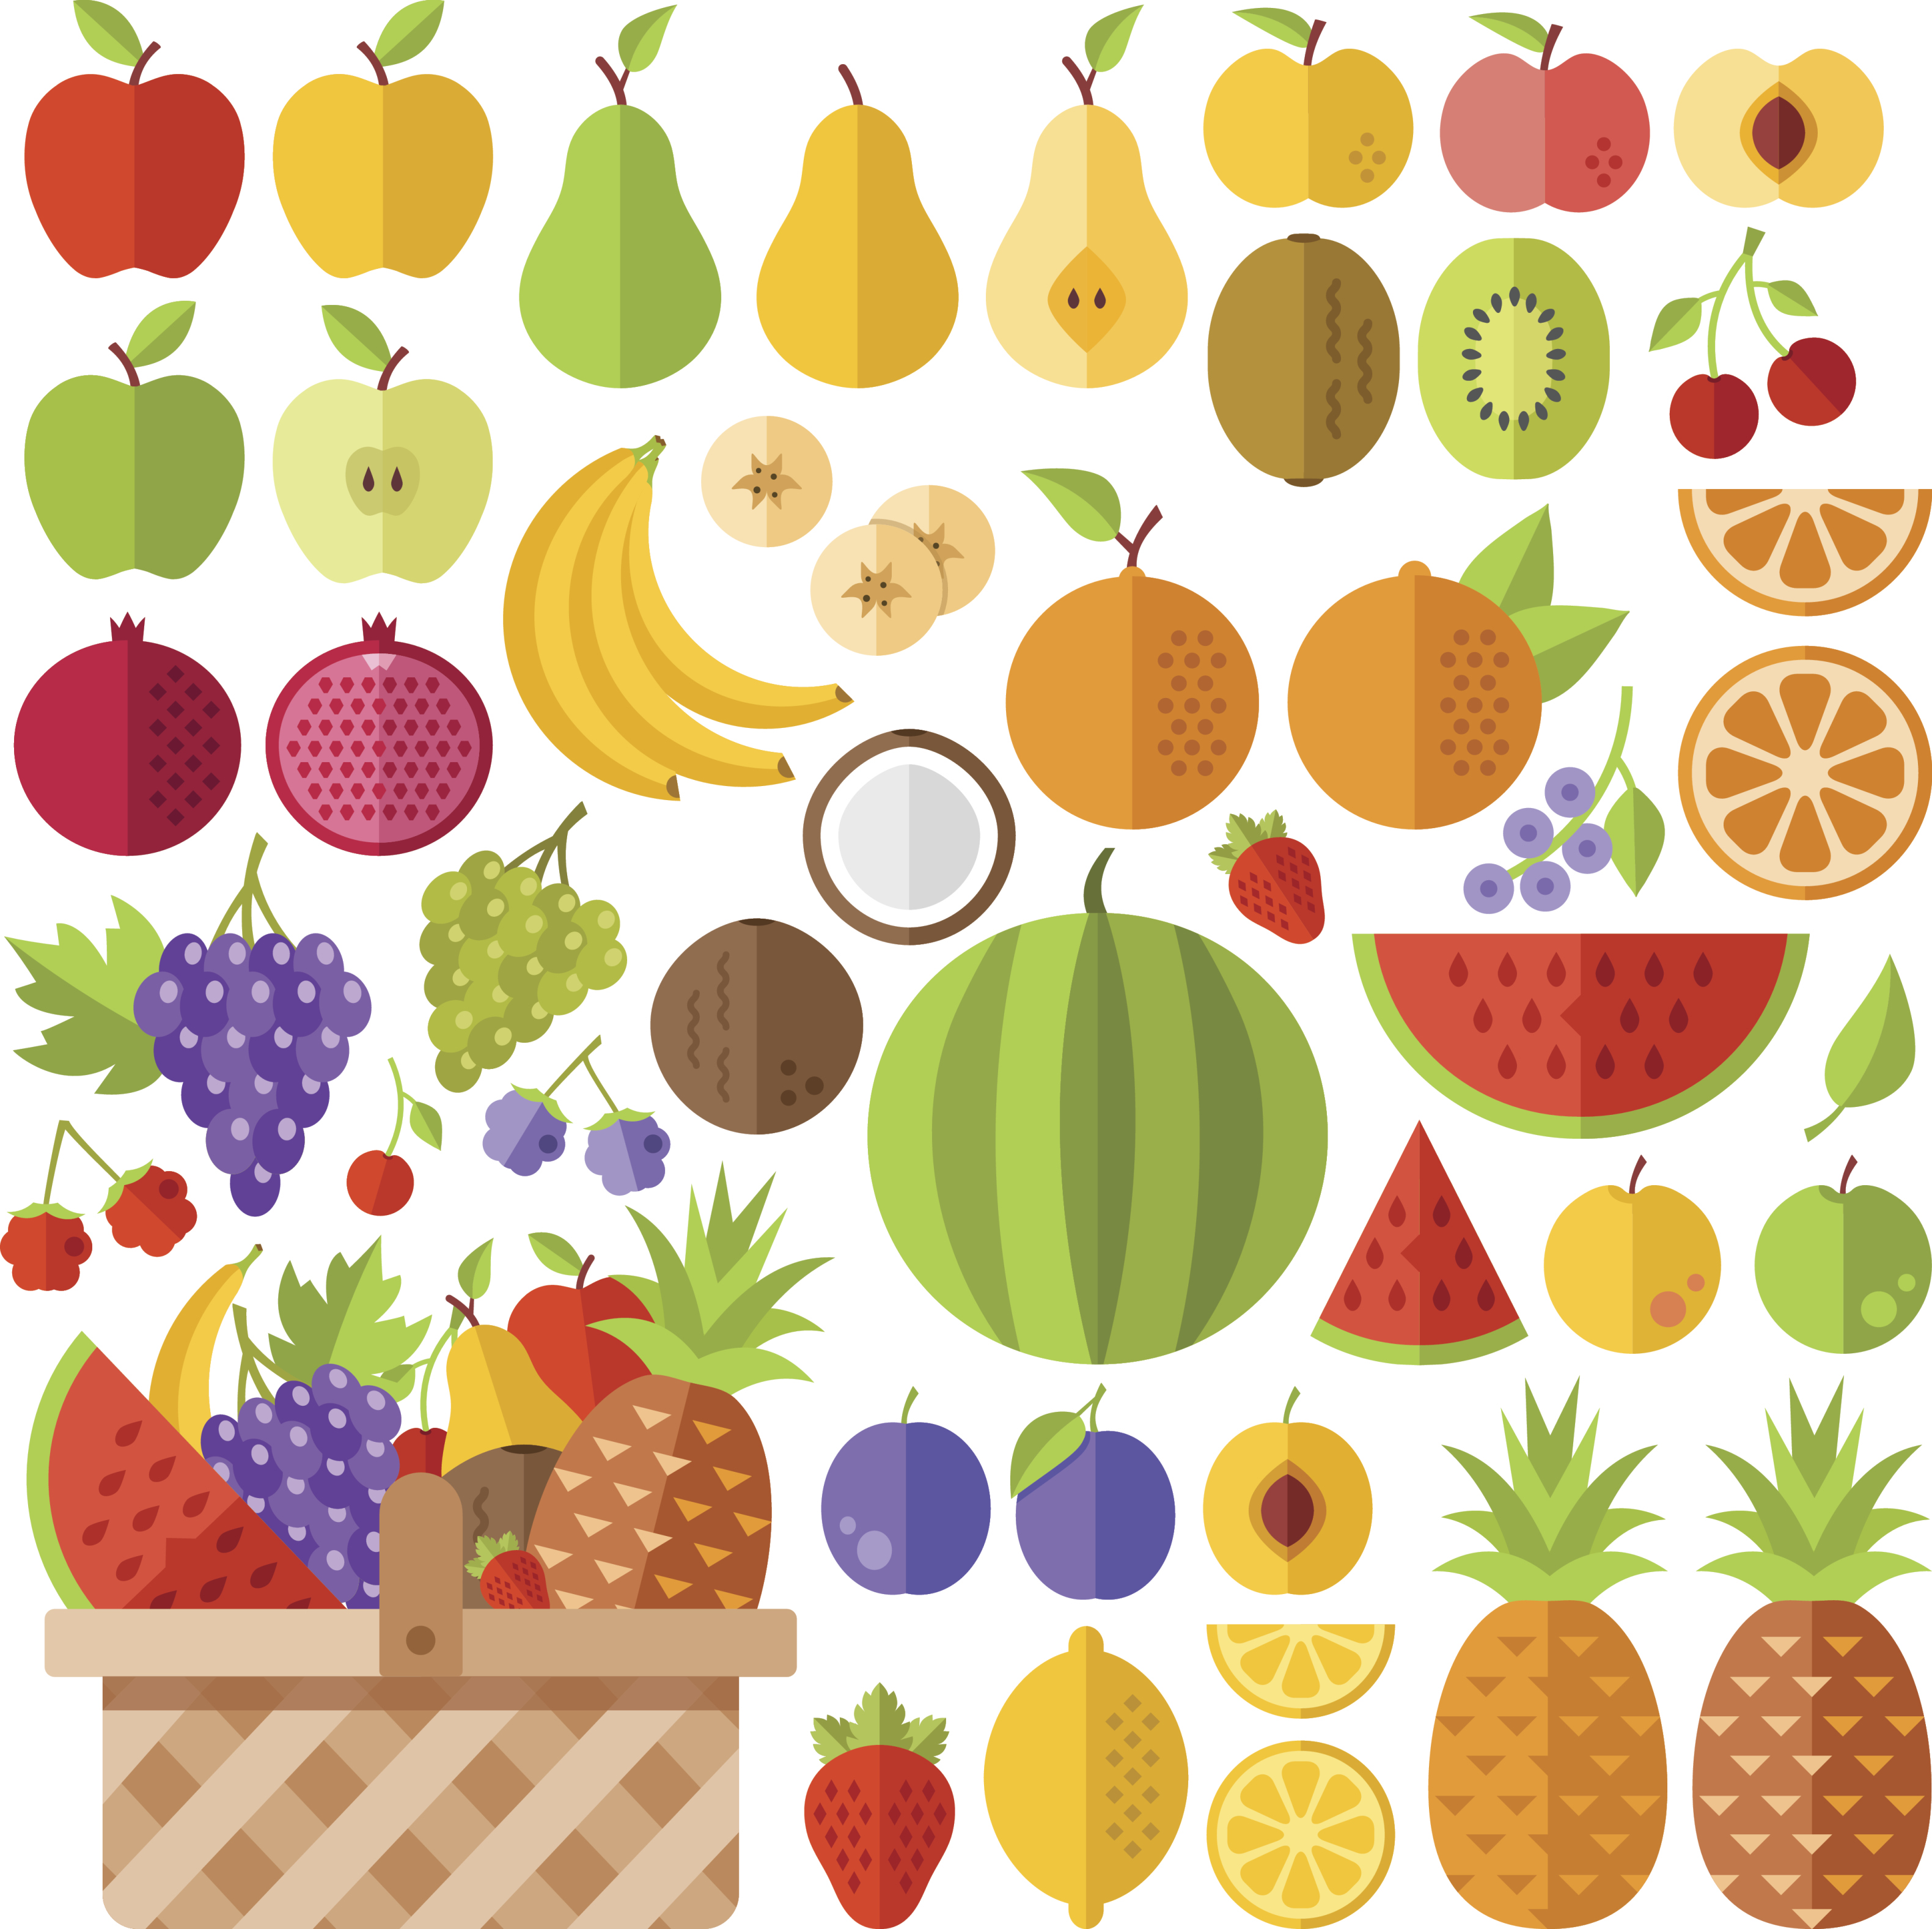 Quais são as frutas usadas para o sabor tutti-frutti dos chicletes